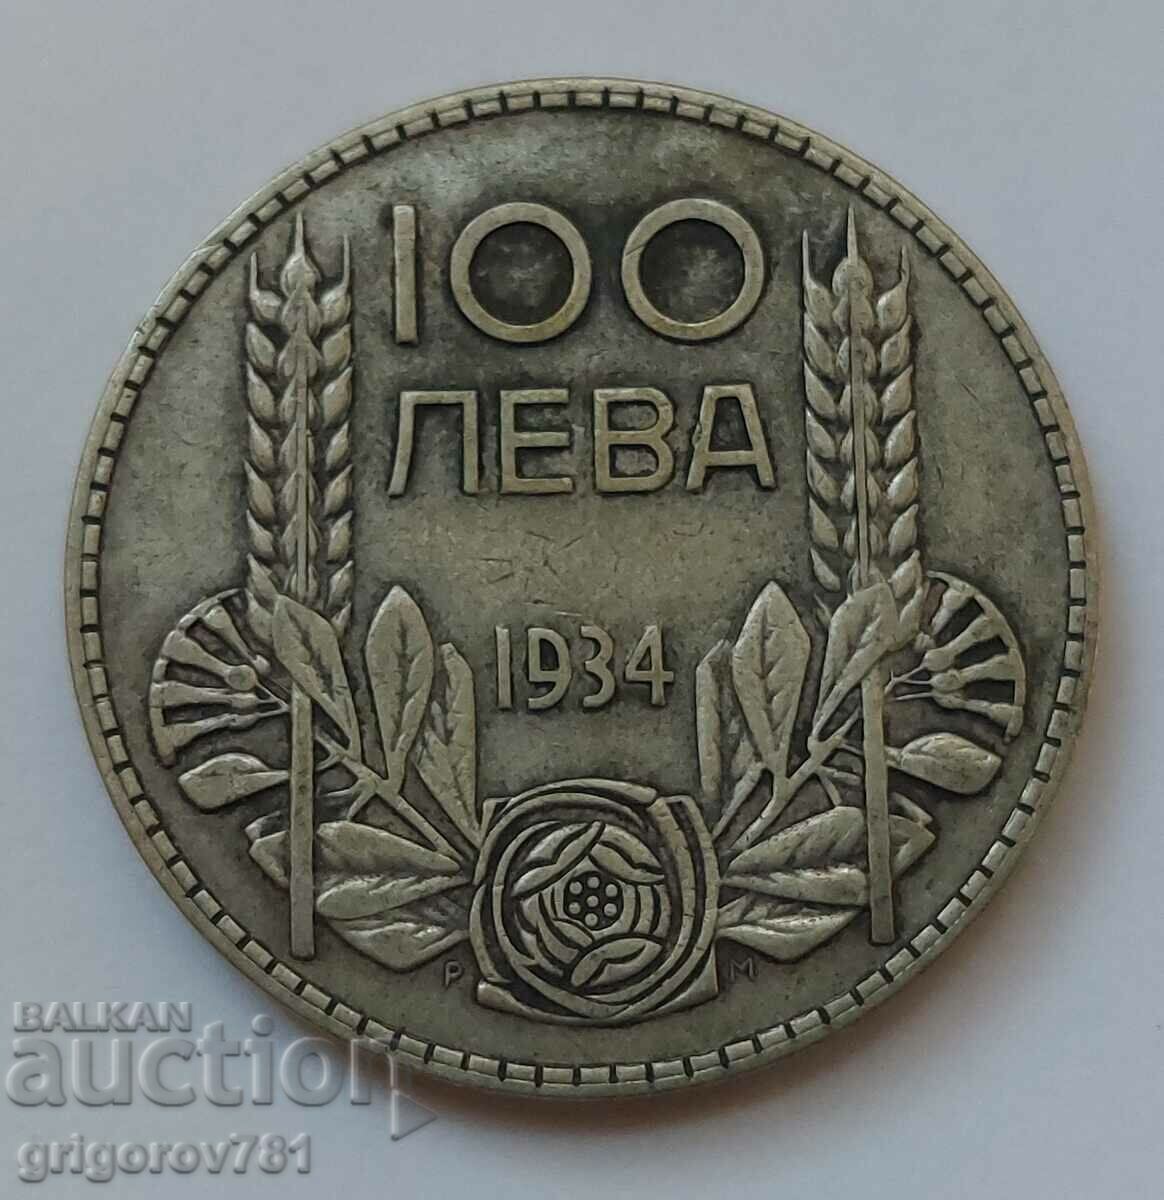 100 leva silver Bulgaria 1934 - silver coin #103